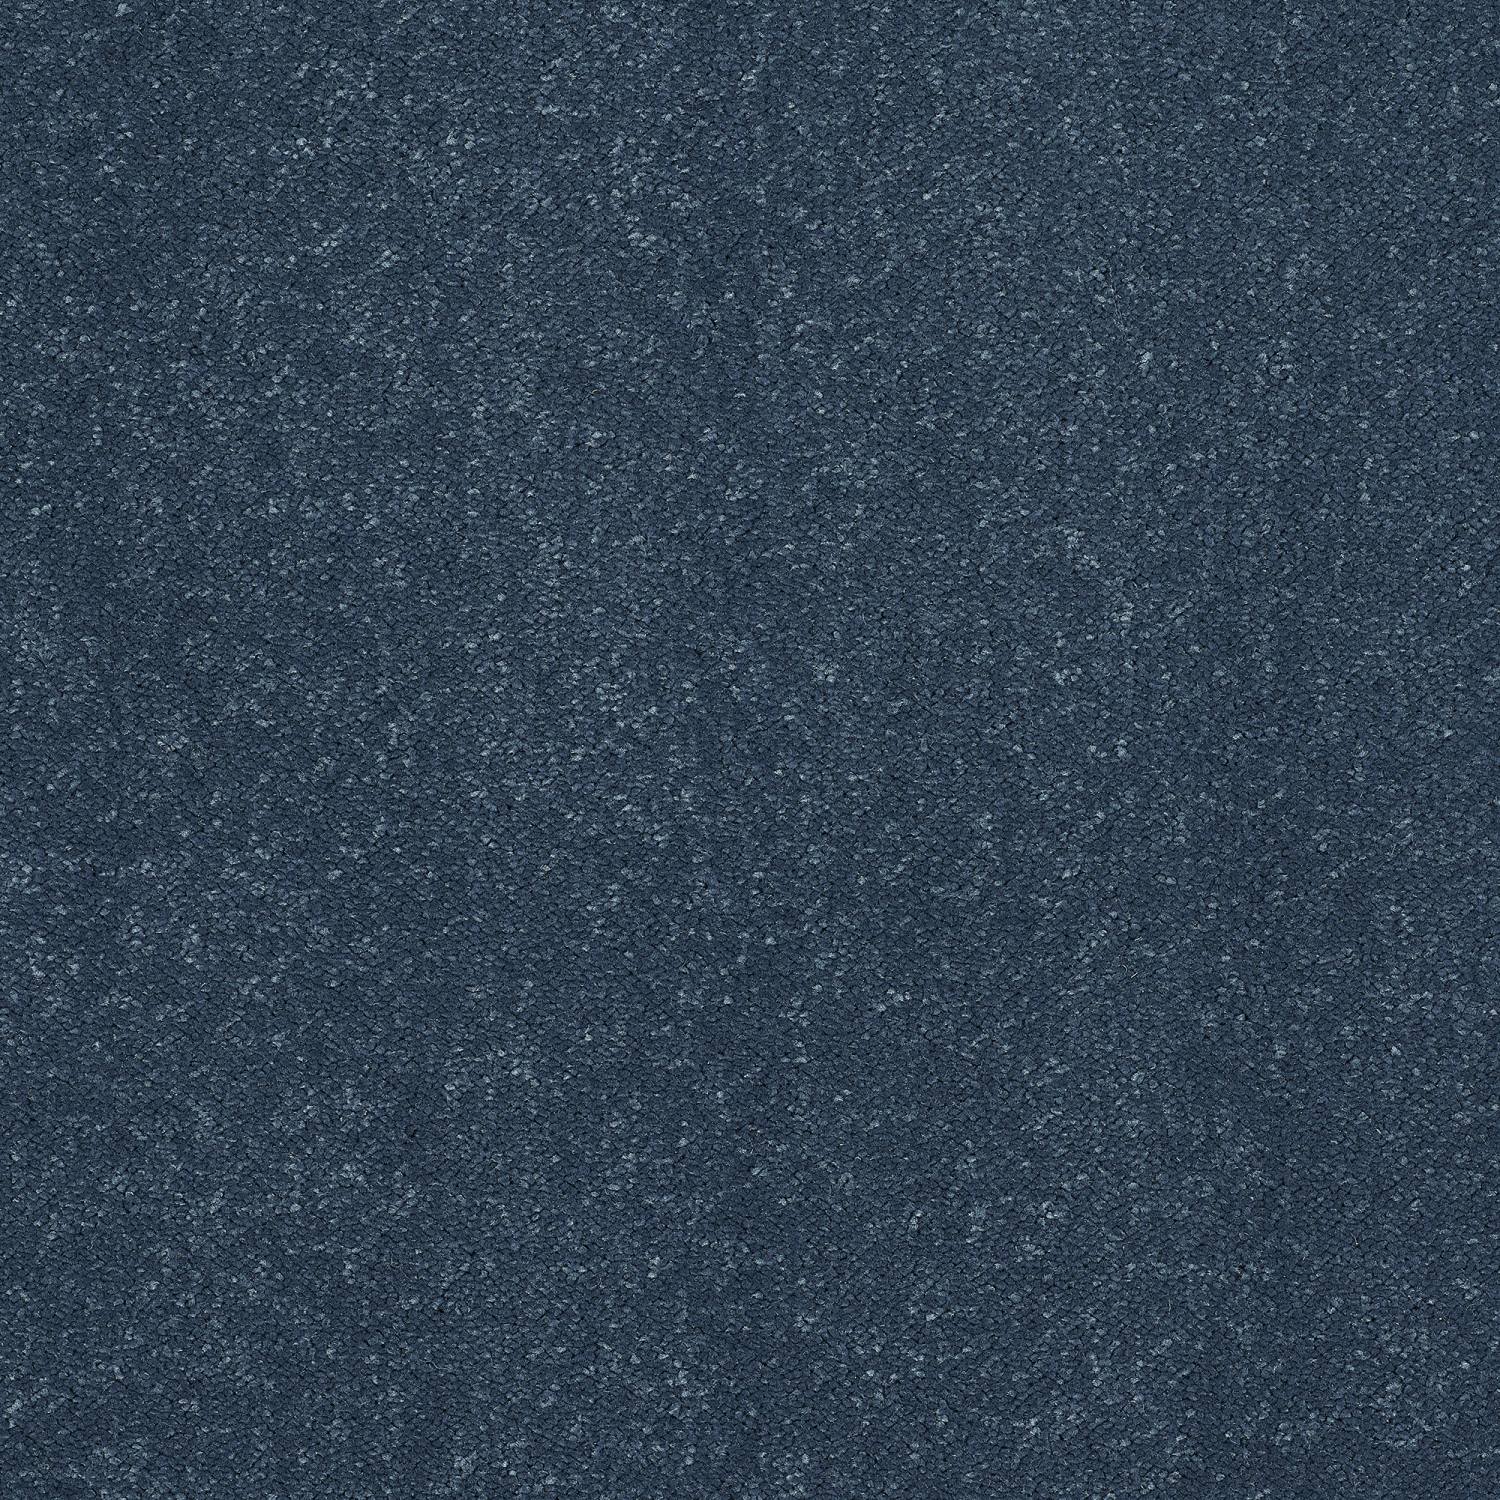 Stainfree Captivation Twist Carpet - Dock Blue